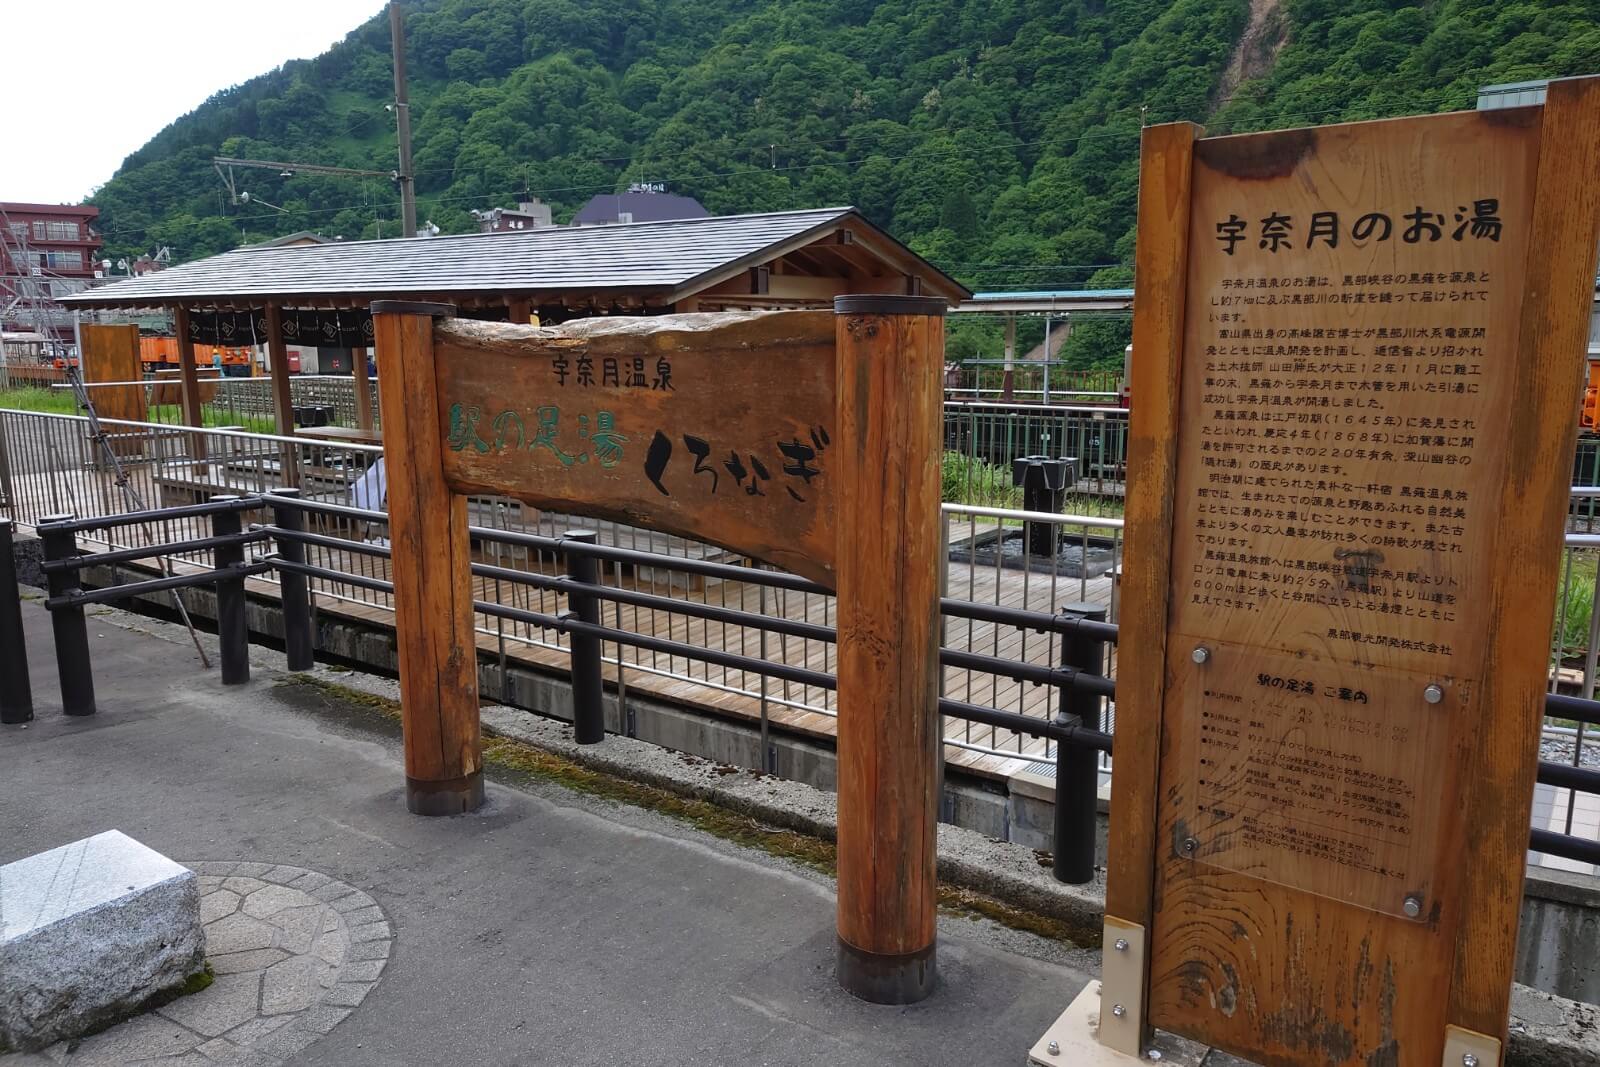 駅の足湯くろなぎ,宇奈月温泉